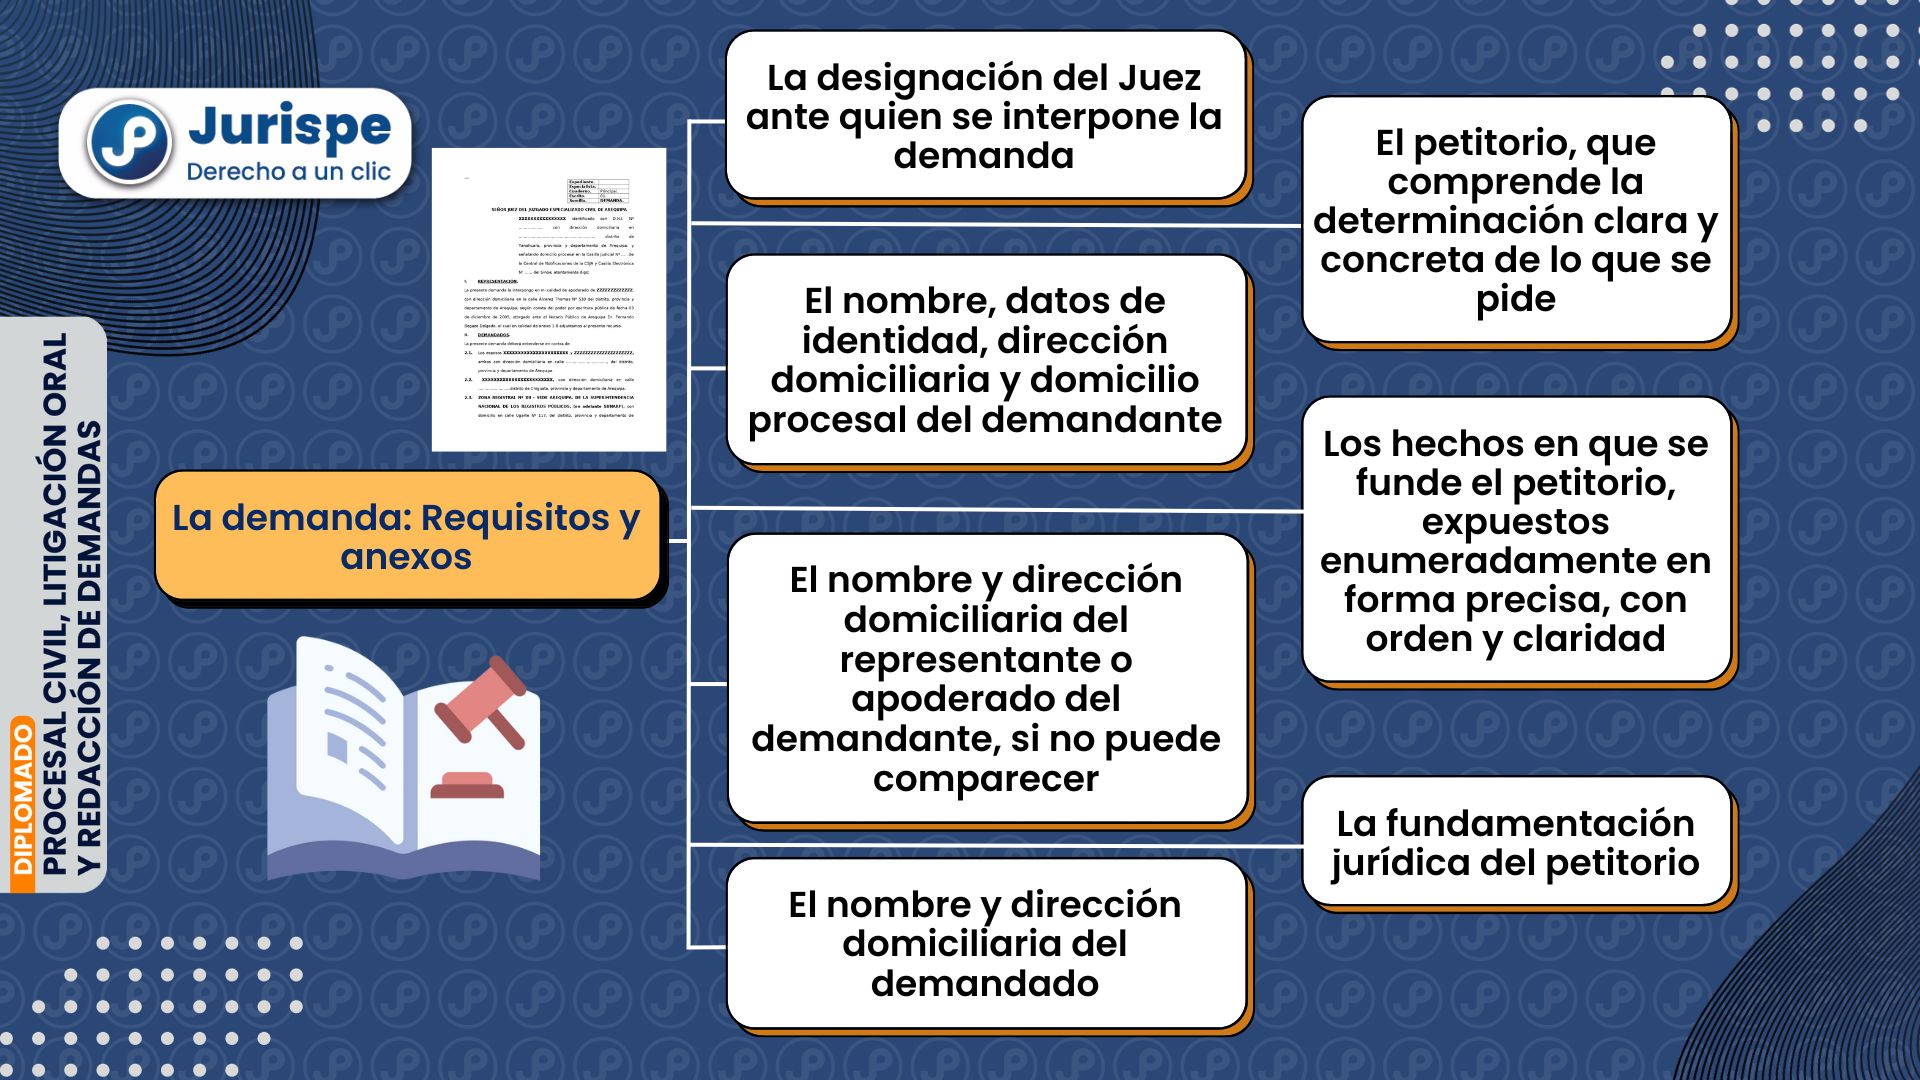 La demanda: requisitos y anexos en el ordenamiento peruano. Bien explicado